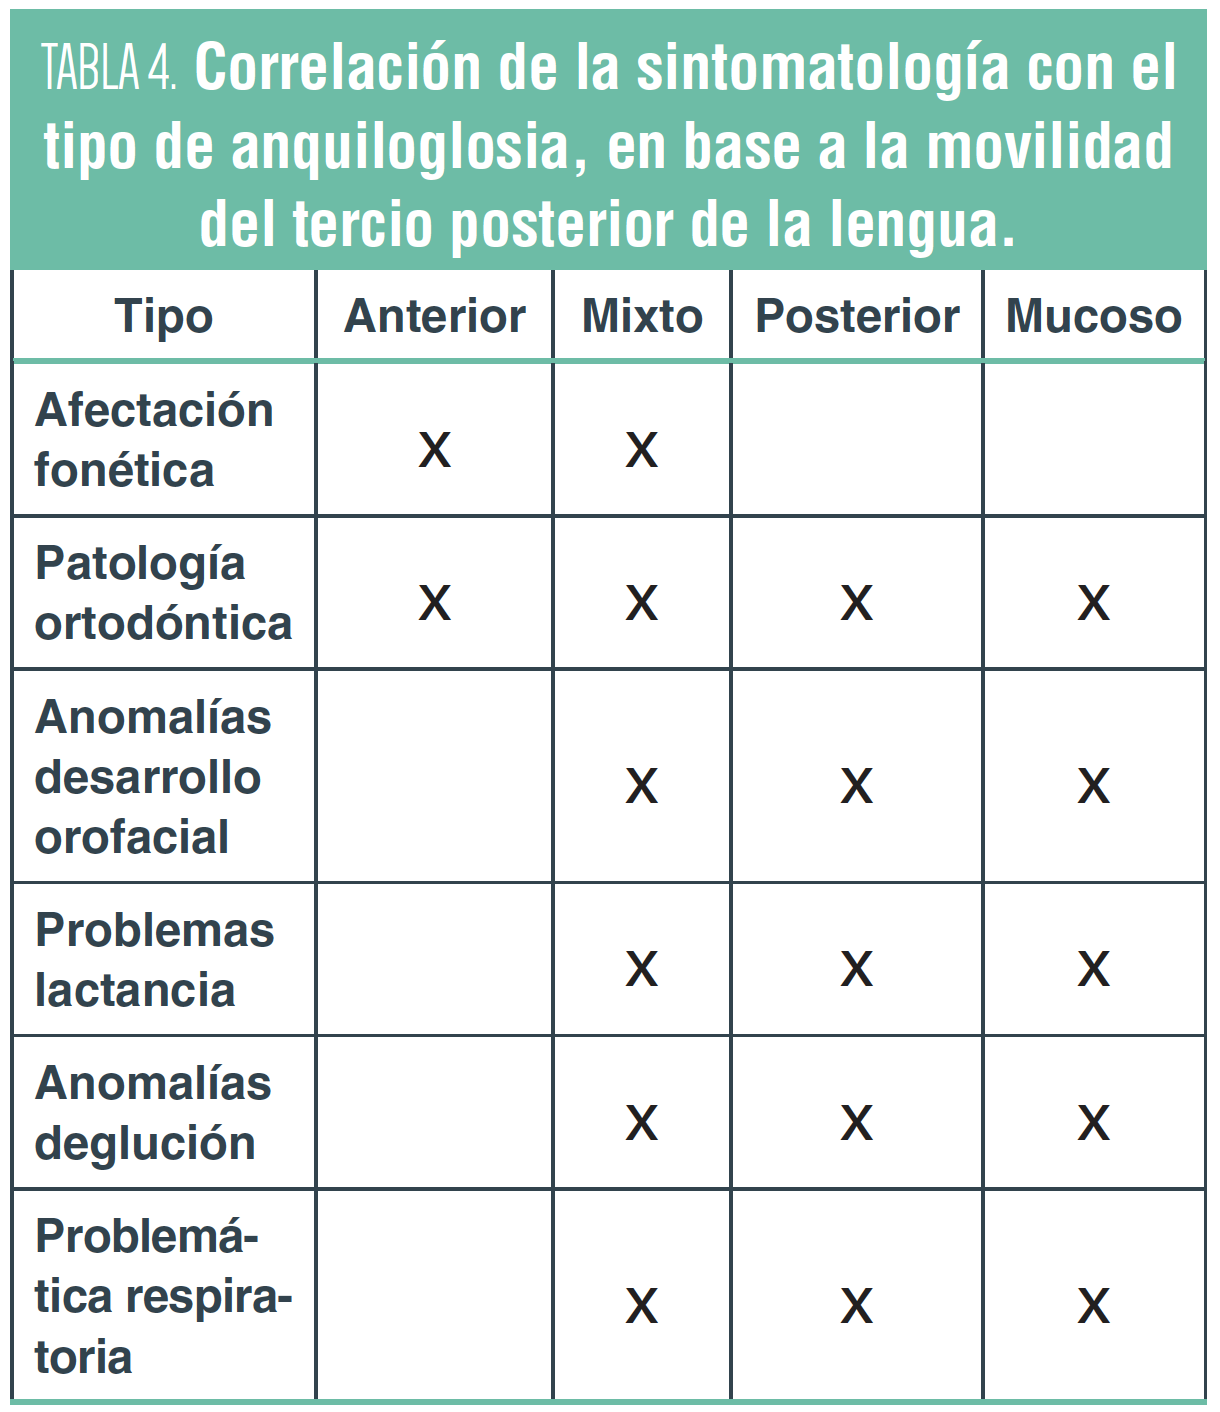 Correlación de la sintomatología con el tipo de anquiloglosia, en base a la movilidad del tercio posterior de la lengua.